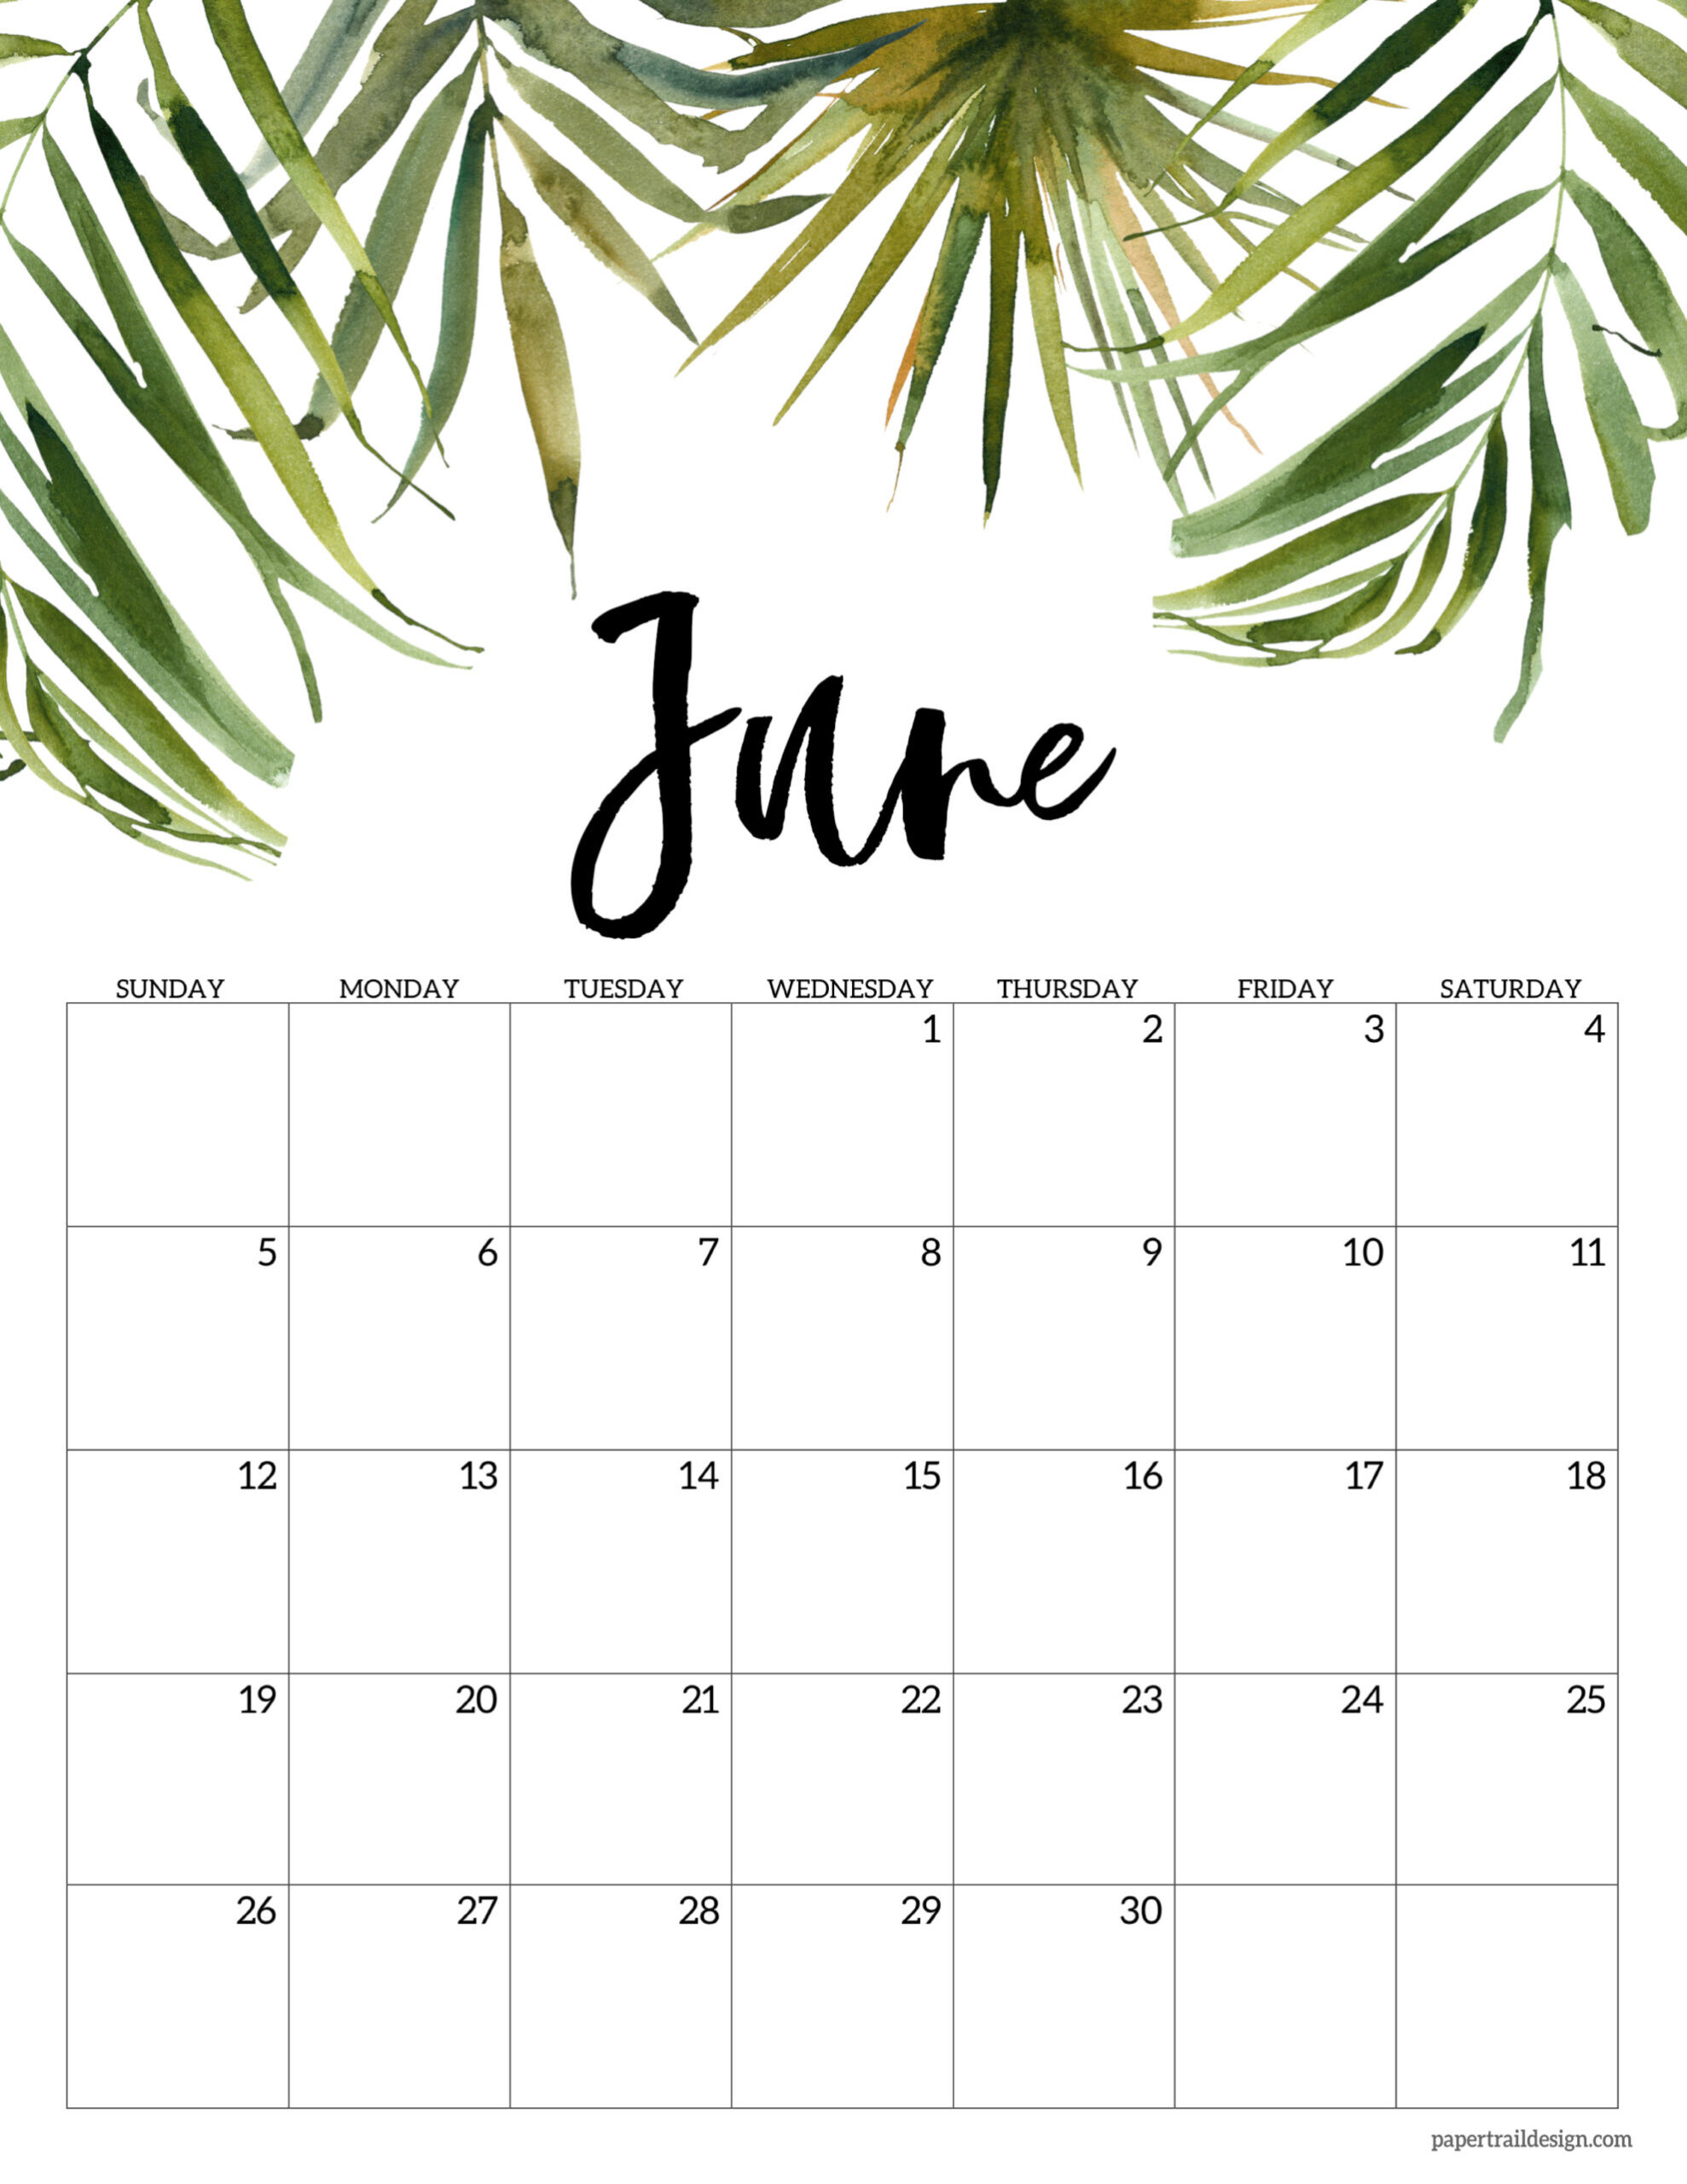 Catch June 2022 Calendar Image